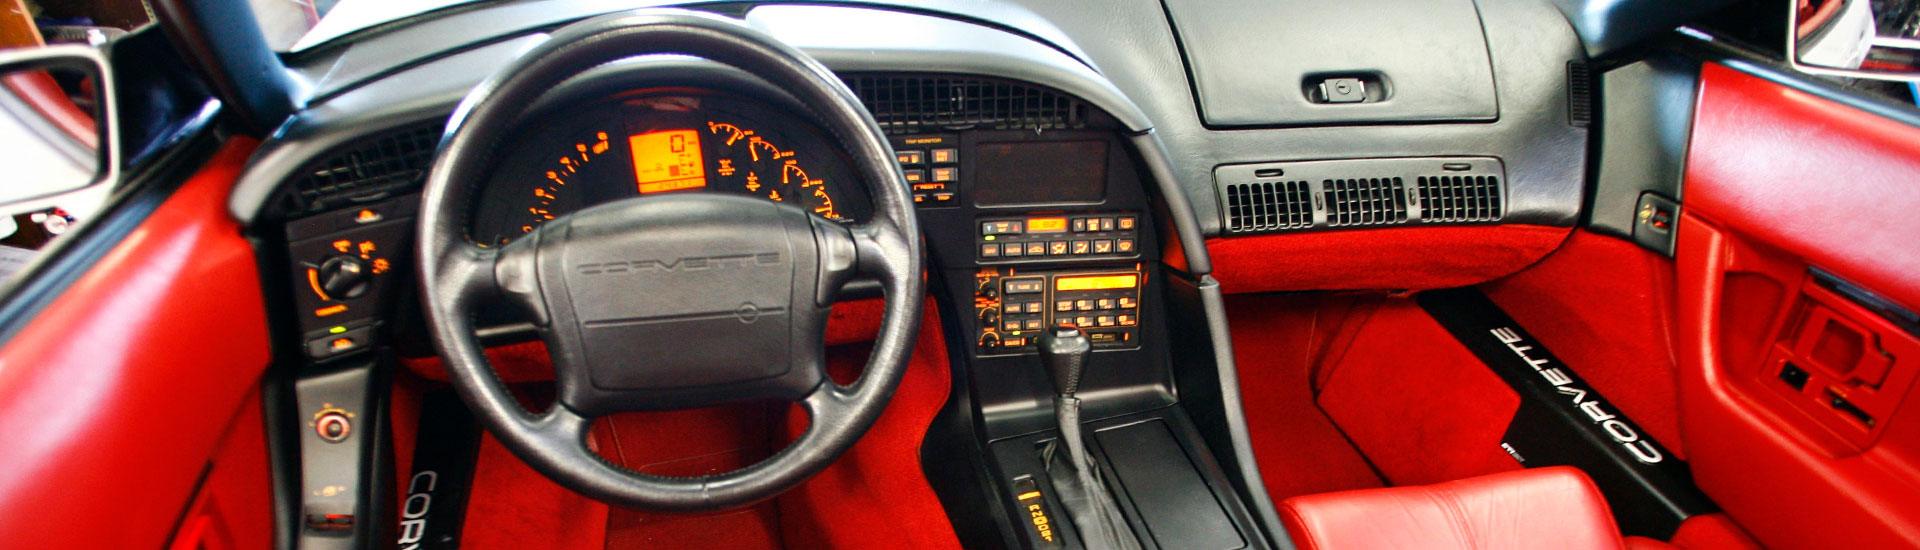 1995 Chevrolet Corvette Dash Kits